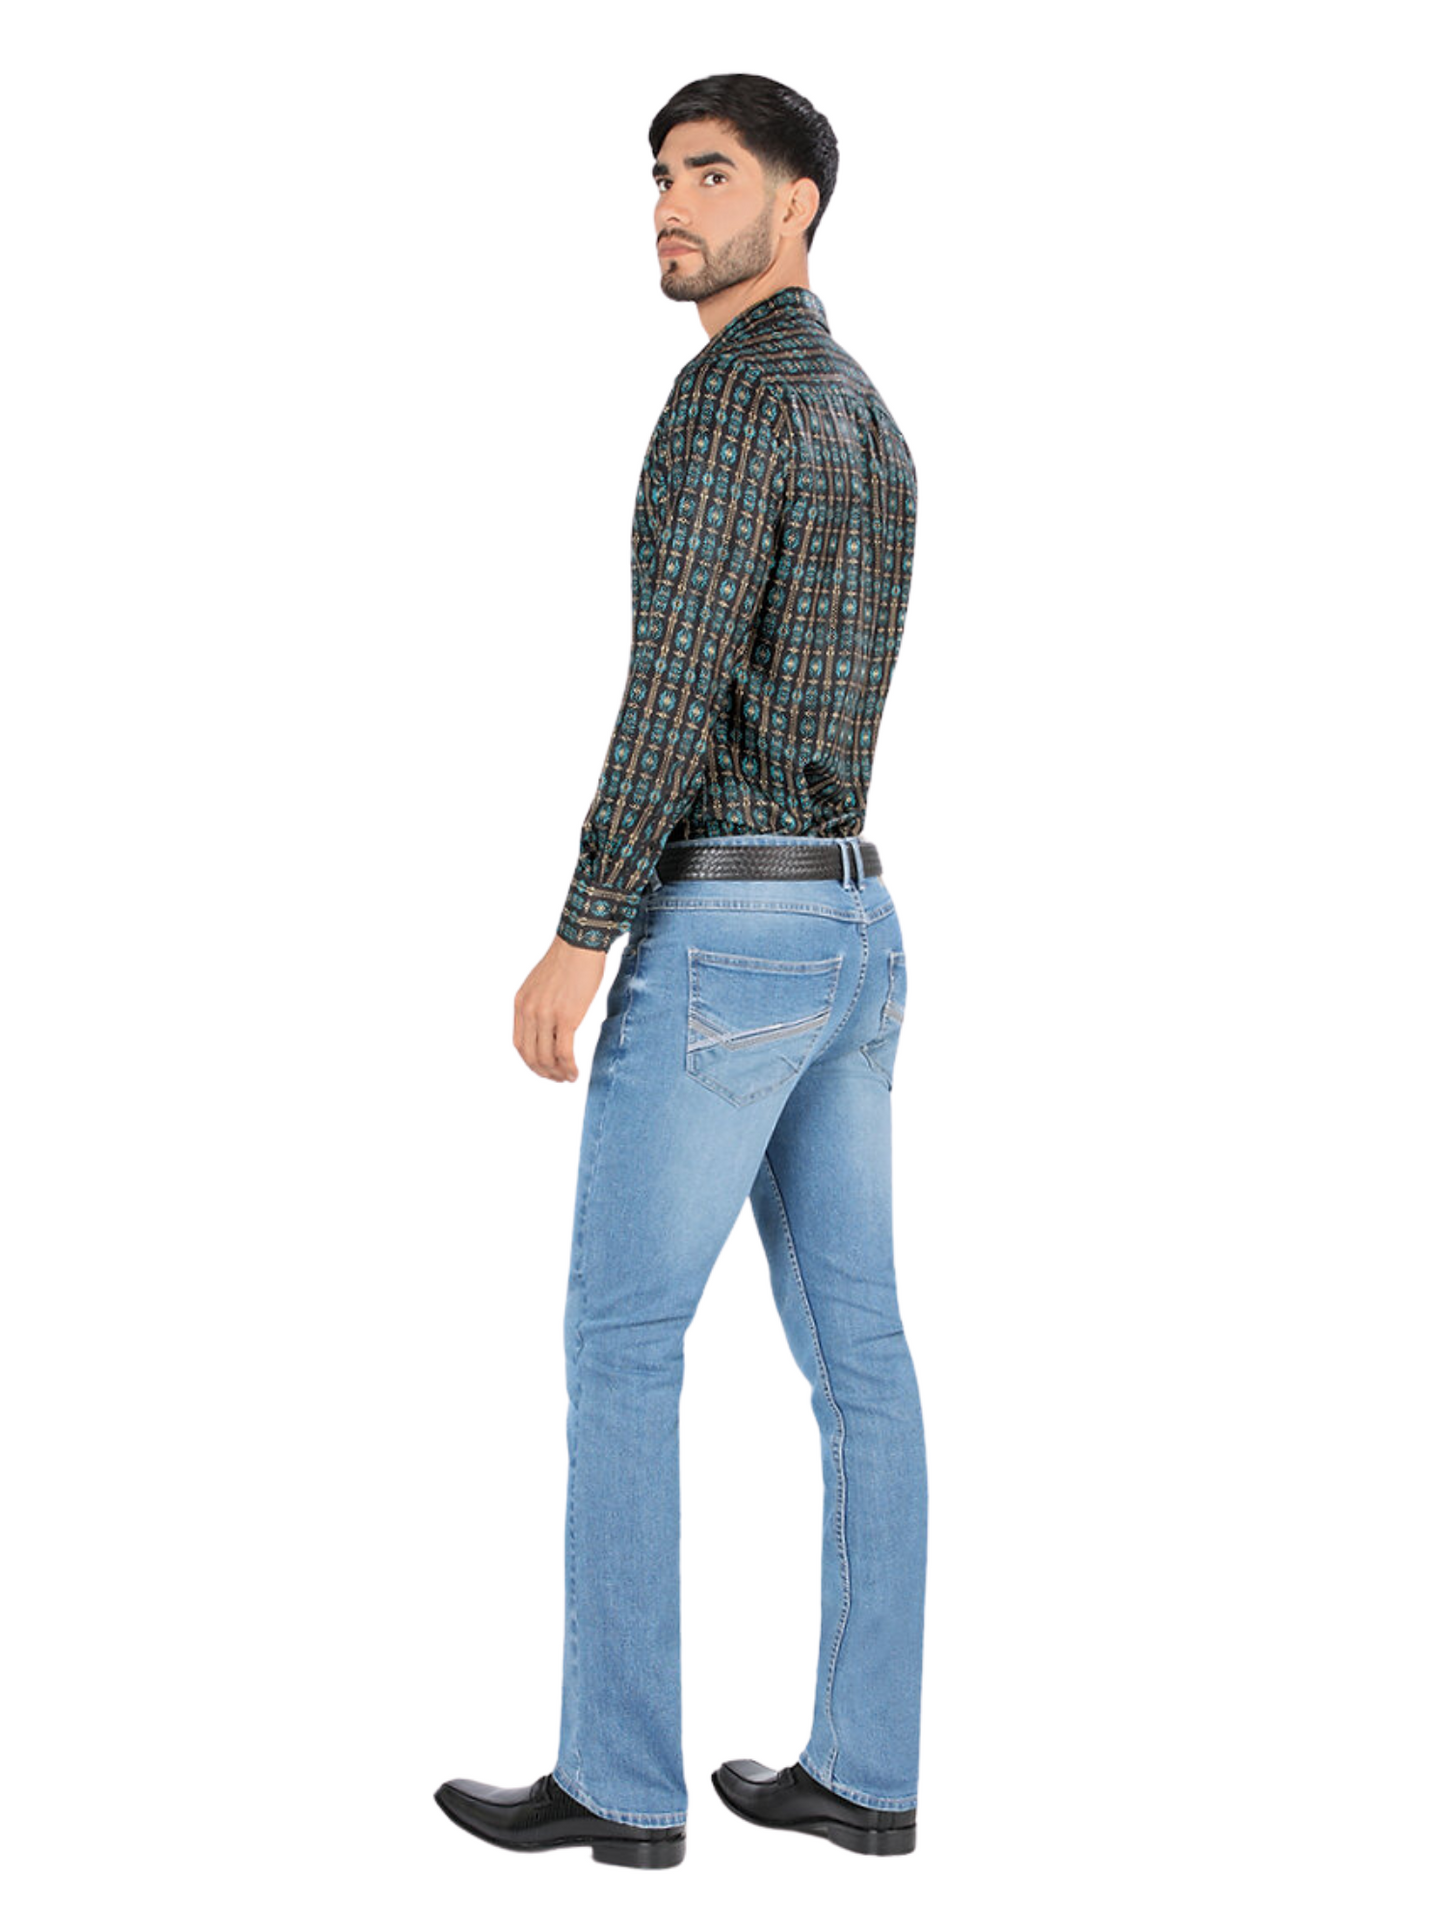 Pantalon Vaquero de Mezclilla Stretch para Hombre 'Montero' - ID: 5312 Pantalones de Vaquero Montero 